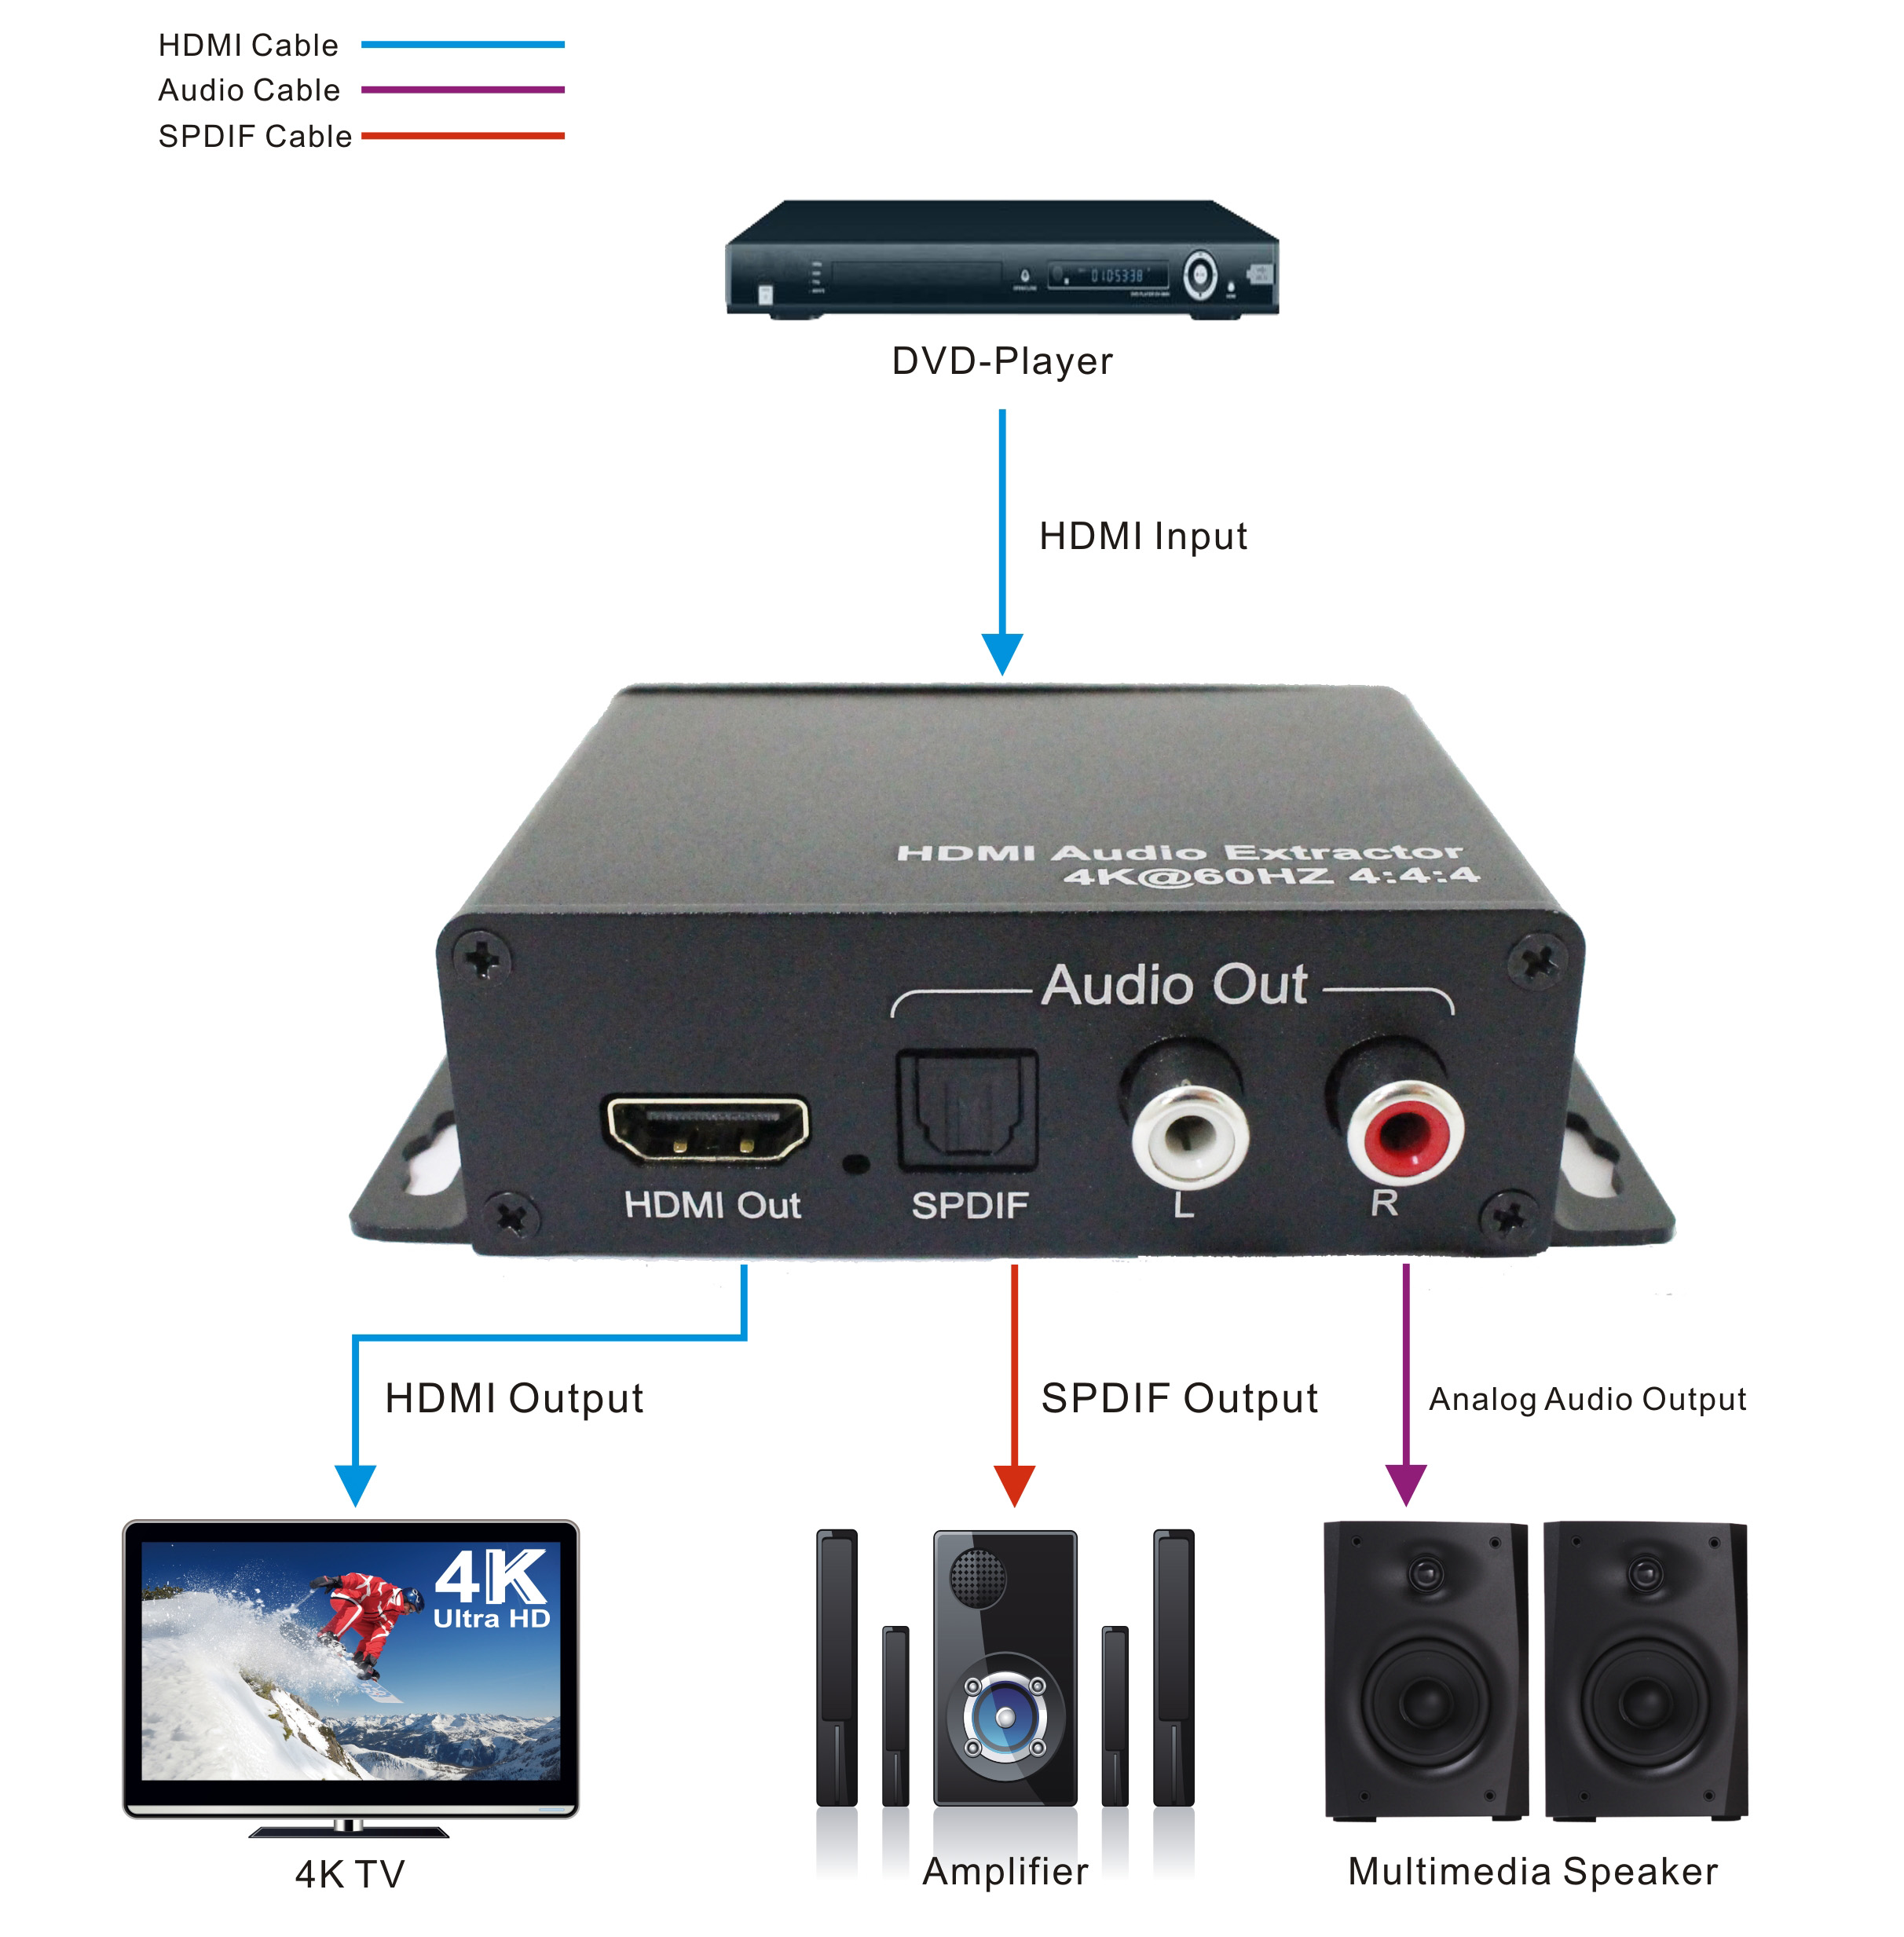 HDMI2.0 Audio Extractor 4k@60 4:4:4